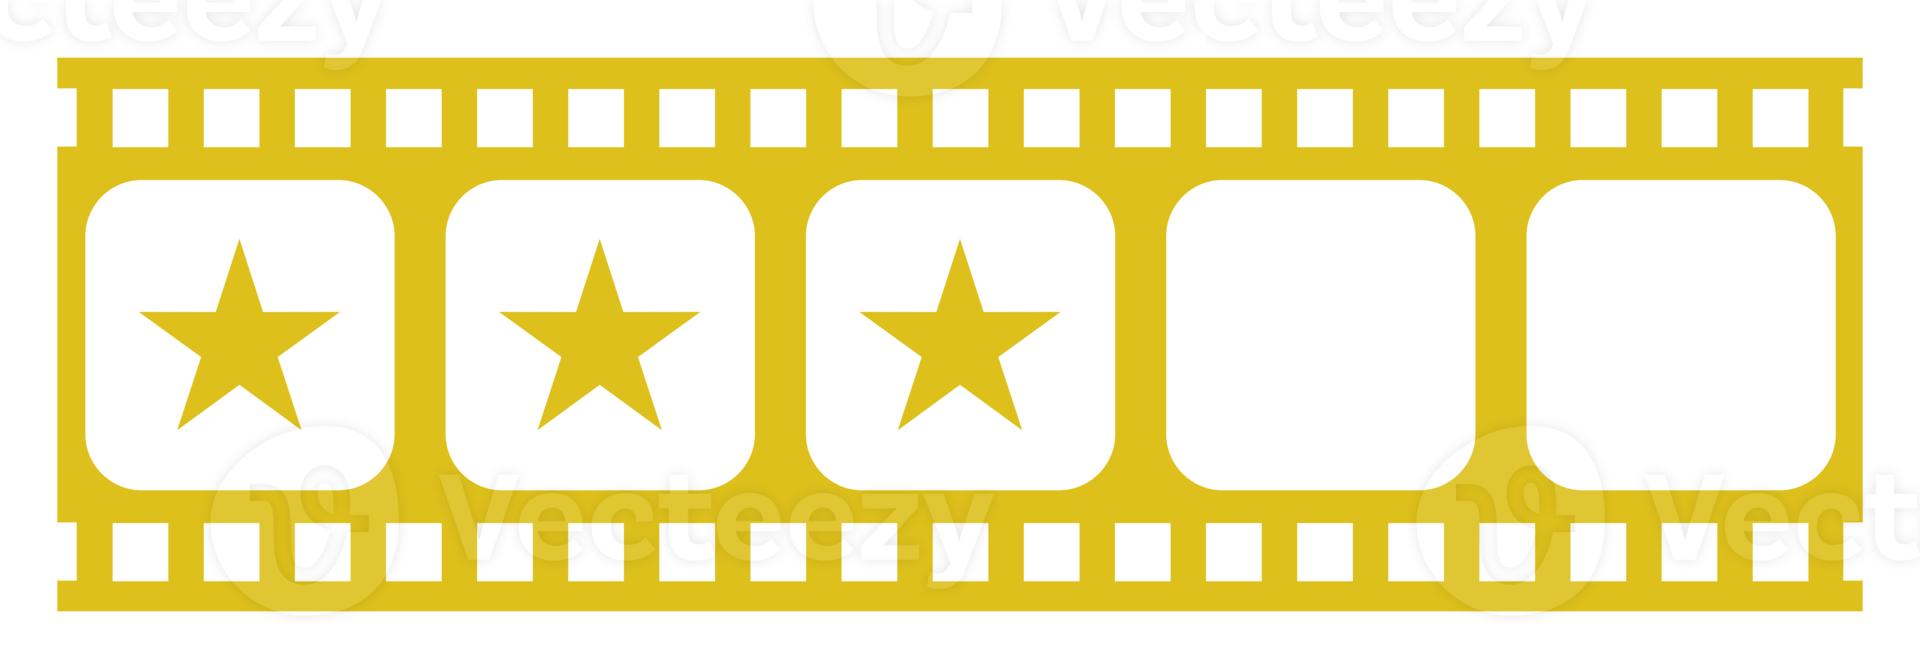 Bild der fünf 5-Sterne-Zeichen in der Filmstreifen-Silhouette. Sternbewertungssymbol für Film- oder Filmkritik, Piktogramm, Apps, Website oder Grafikdesignelement. Bewertung 3 Sterne. PNG-Format png